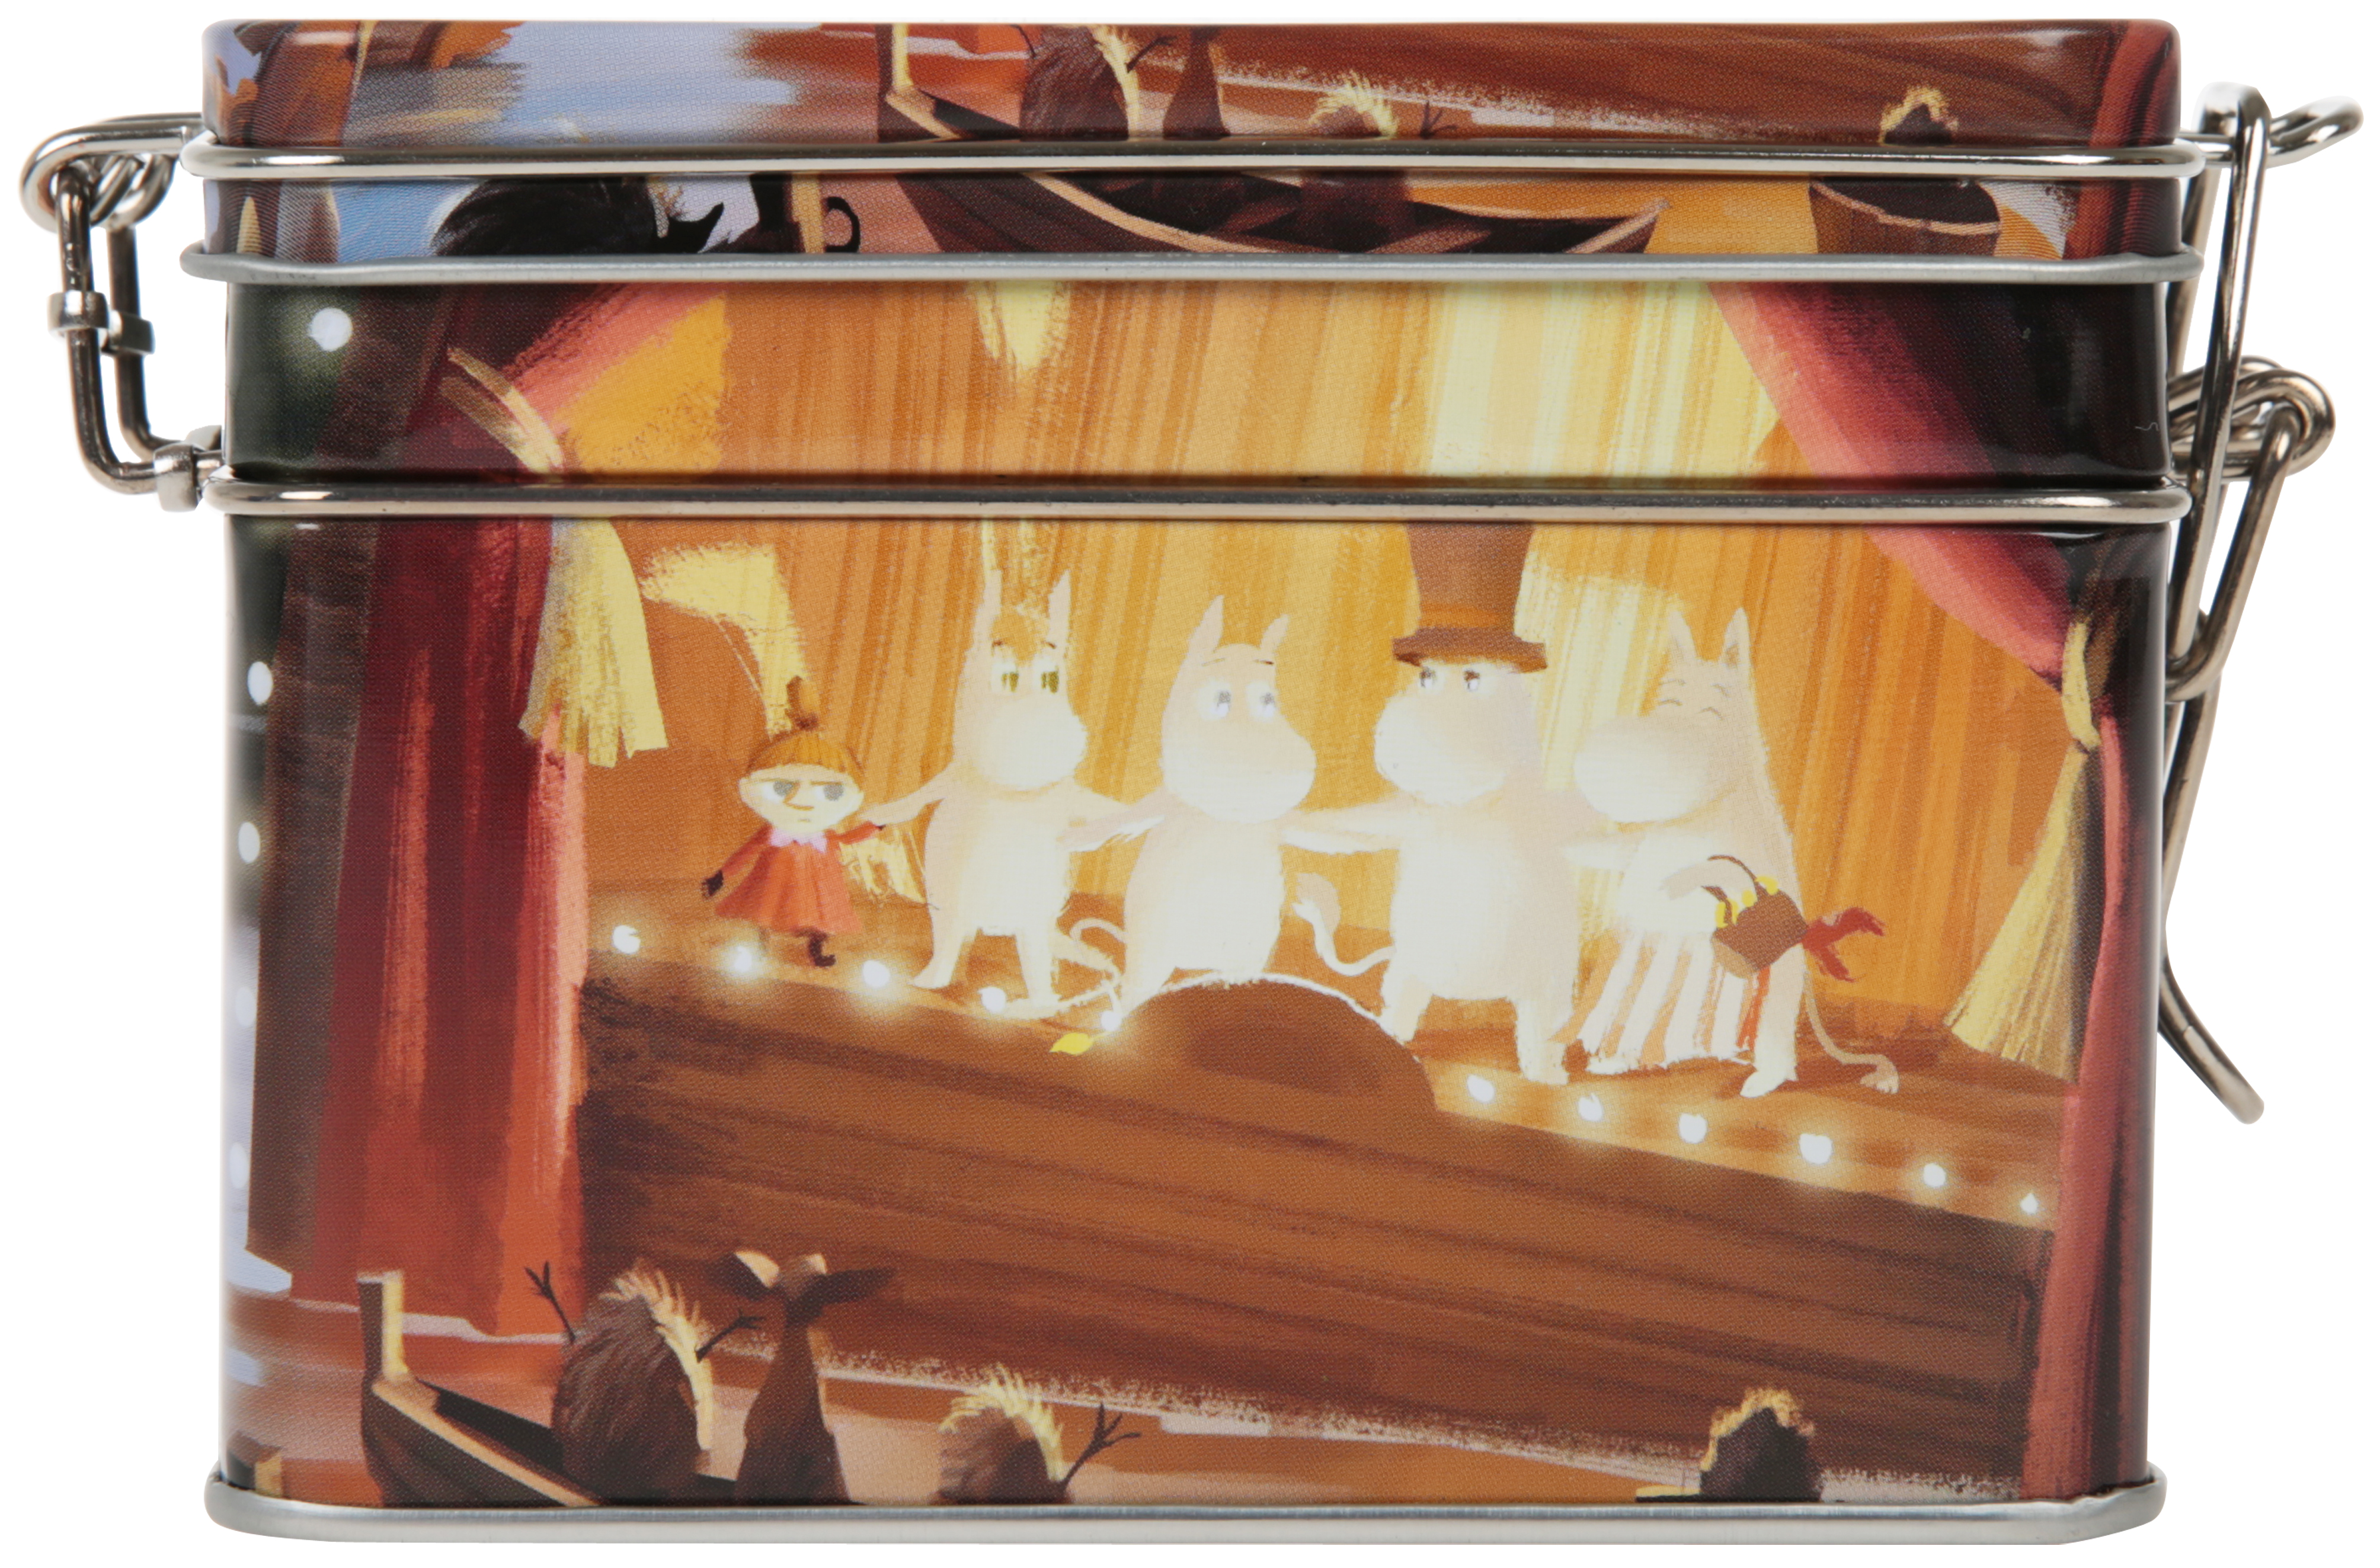 Martinex Moominvalley Animation Tea Tin At The Theatre